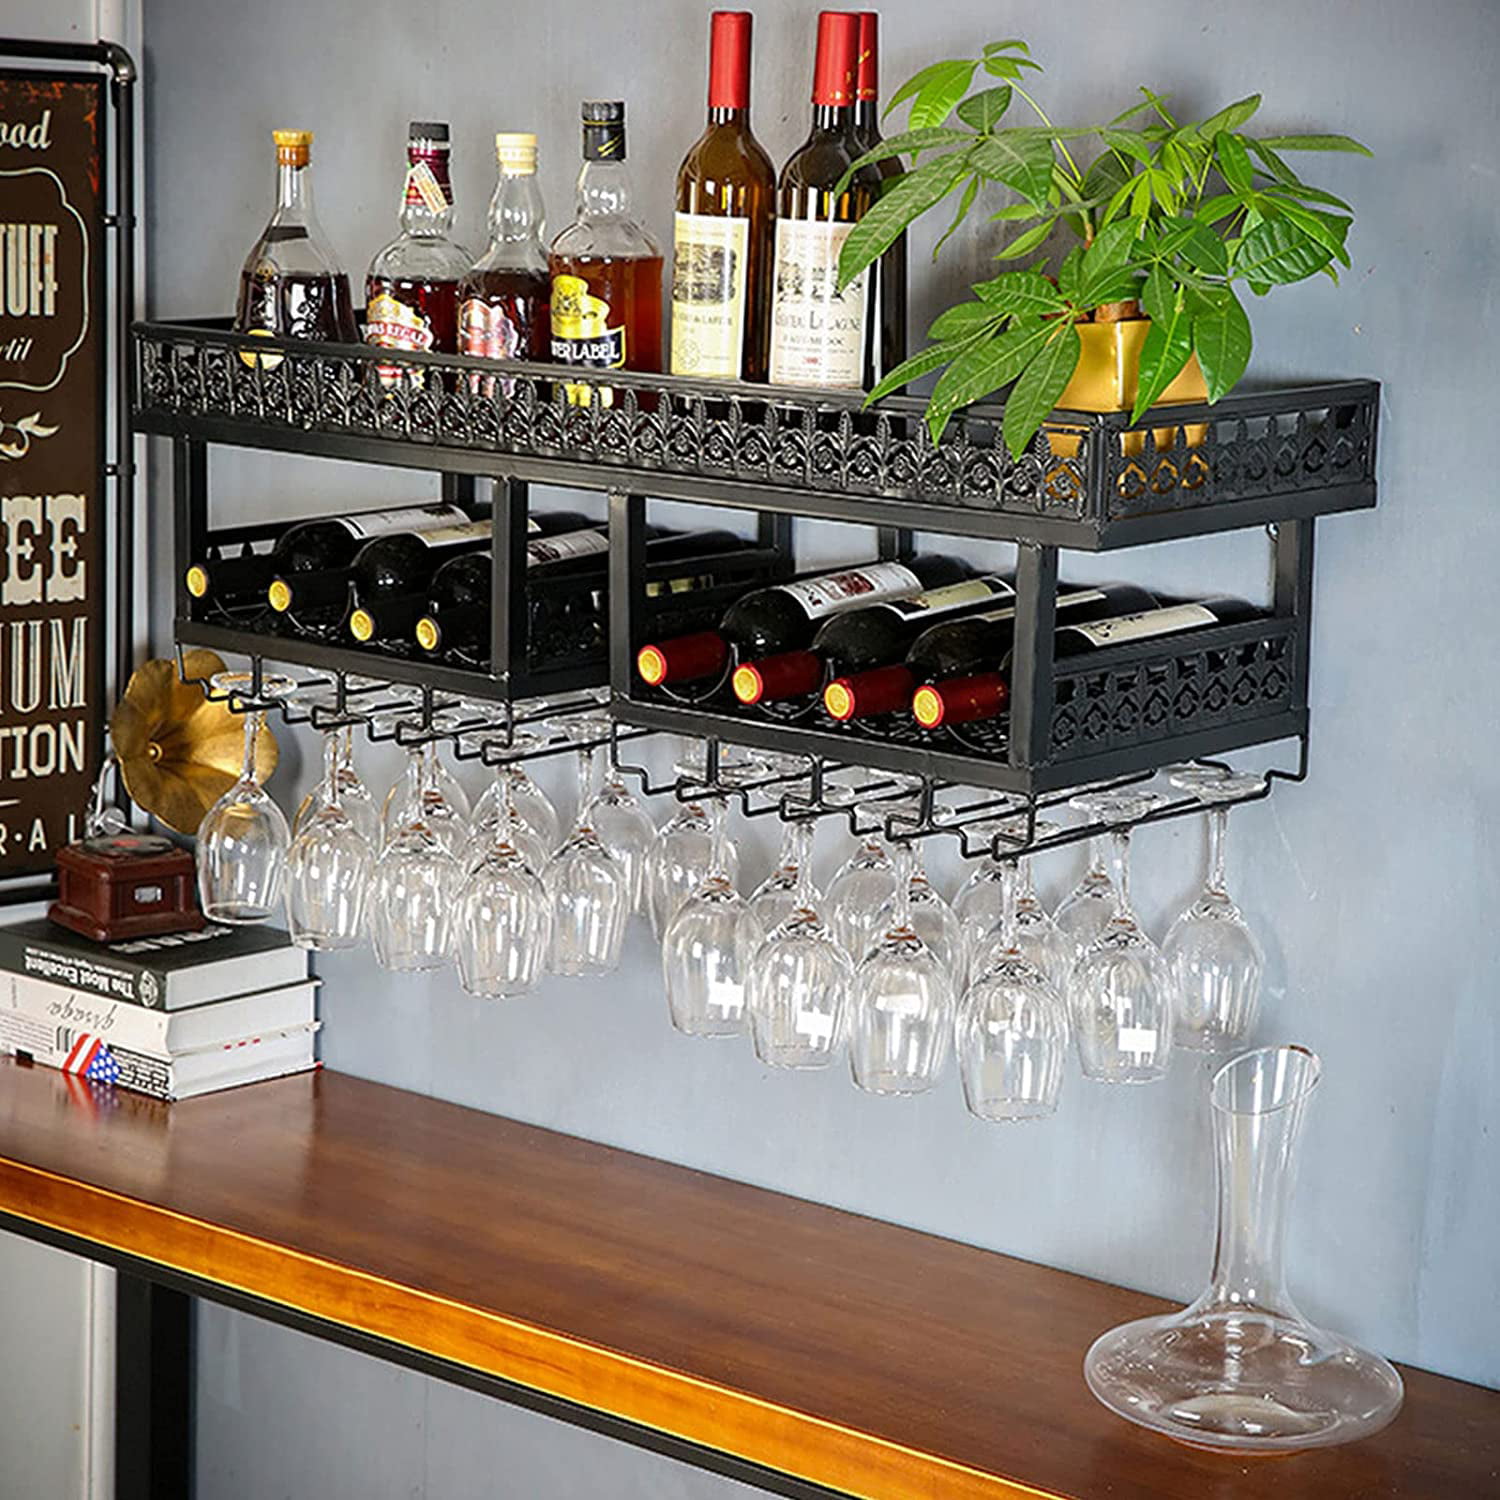 Wine Bottle Rack, Wine Glass Holder And Decoration, Hanging Wine Bottle  Holder For Upside Down Display, Elegant And High-end Design